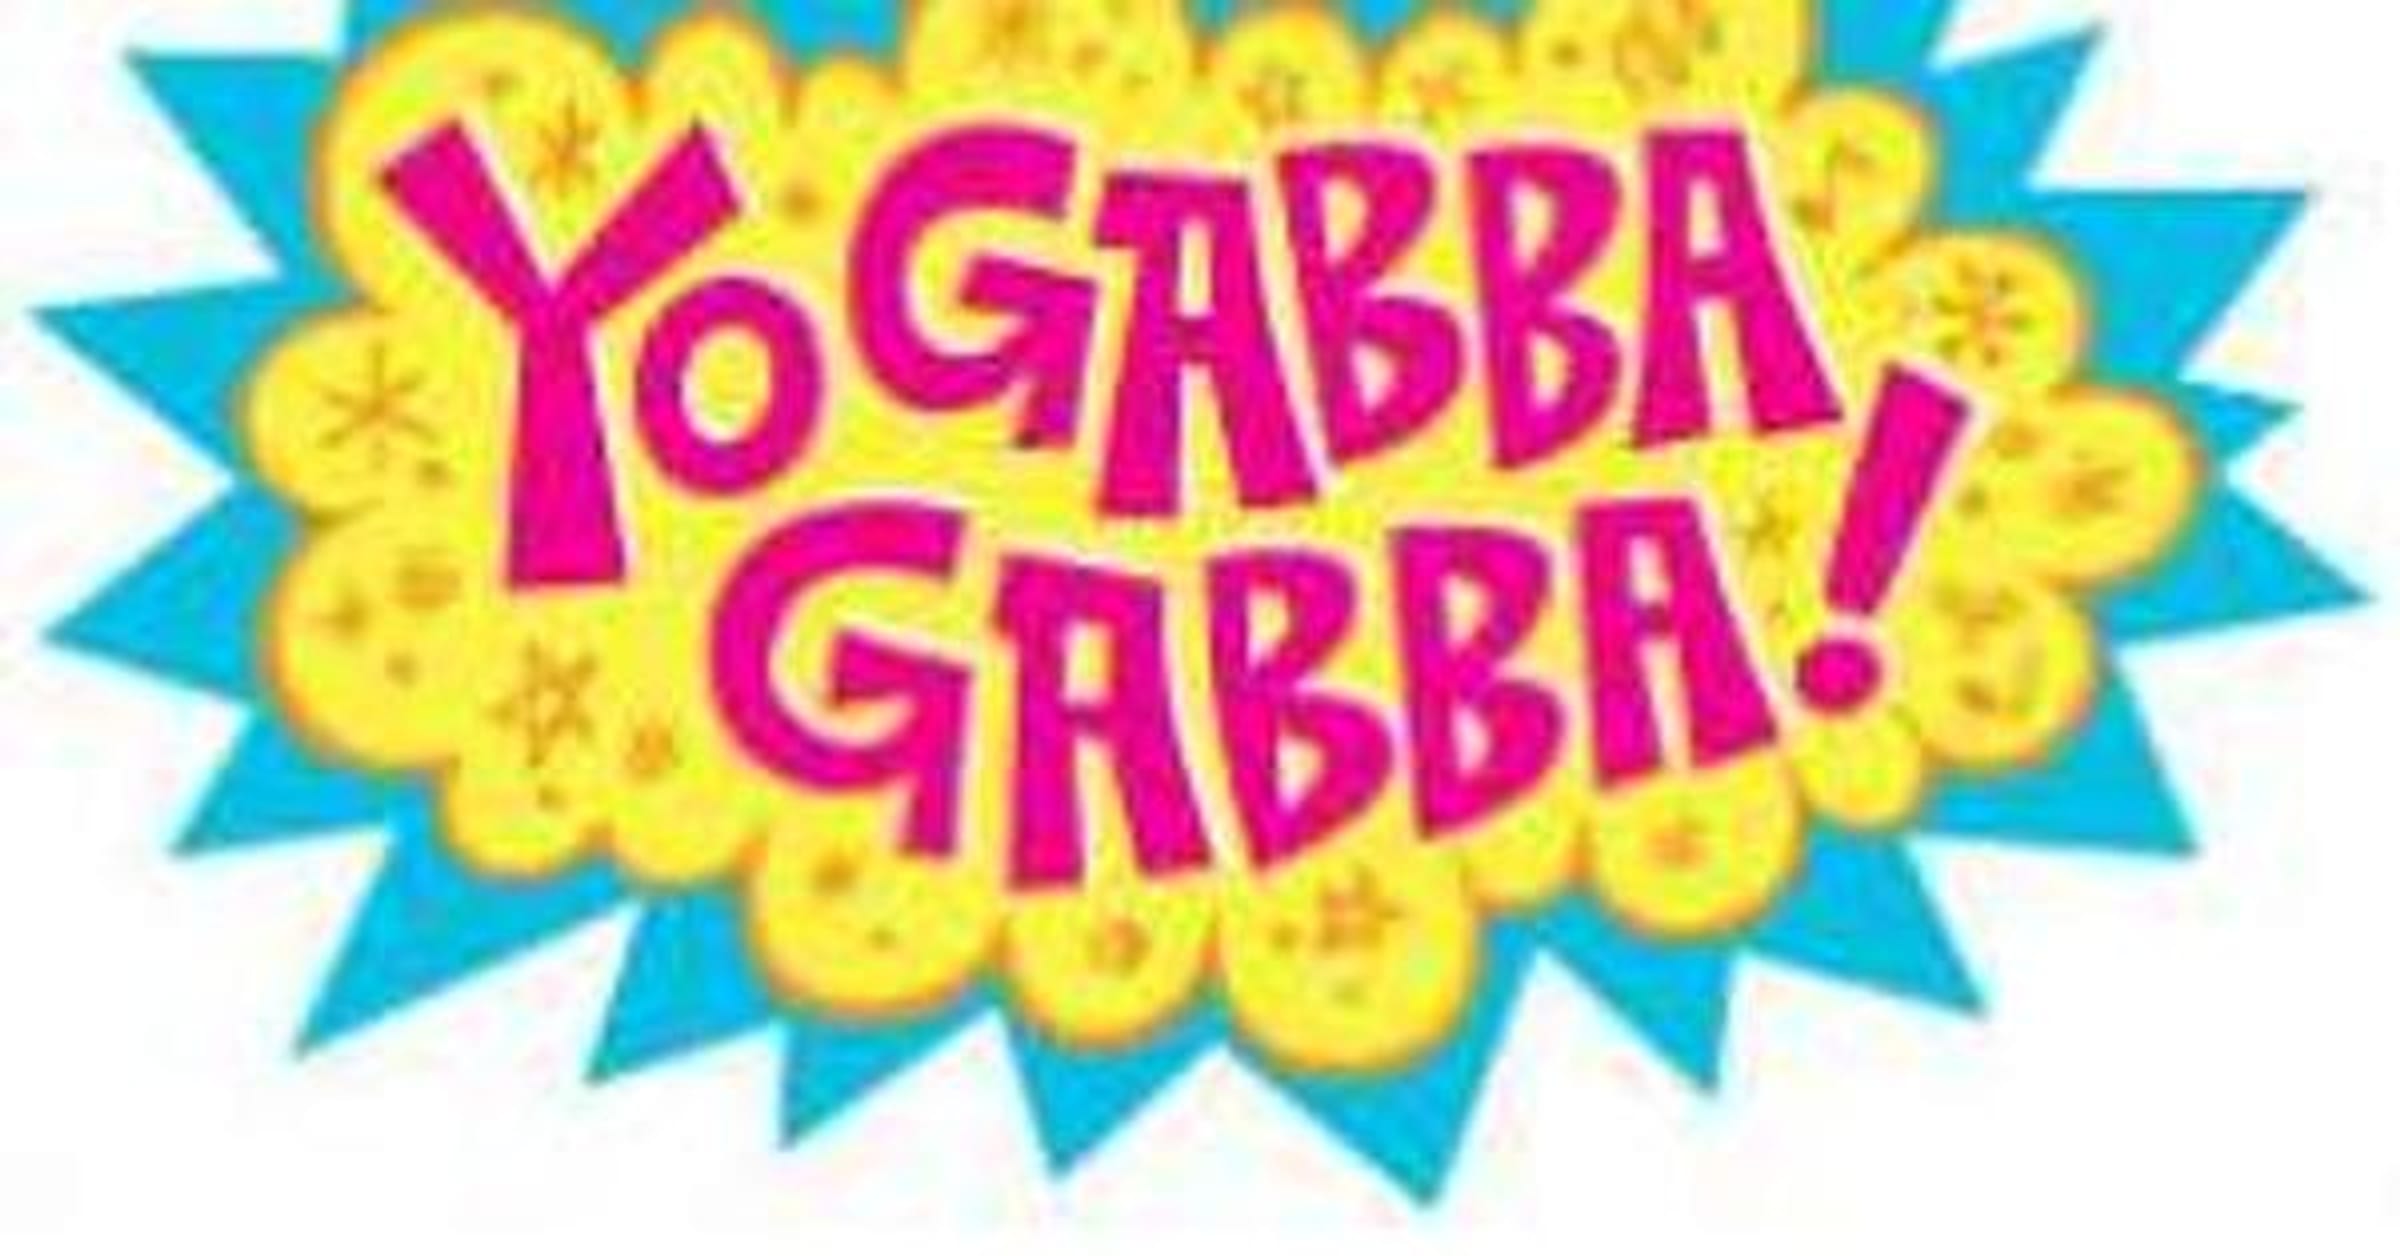 All Yo Gabba Gabba! Episodes  List of Yo Gabba Gabba! Episodes (57 Items)